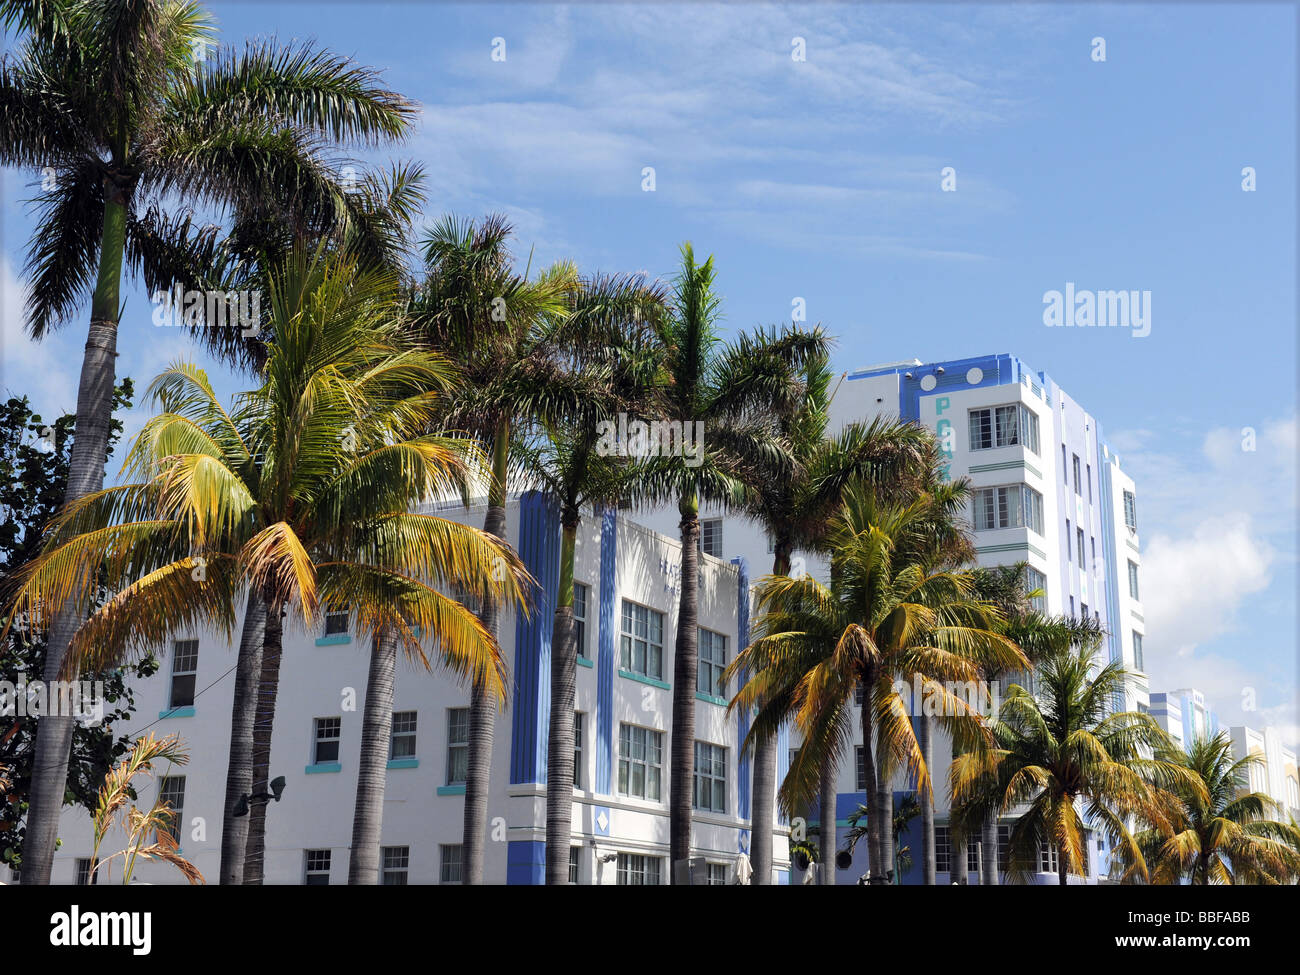 Le célèbre quartier art déco de South Beach, Ocean Drive à Miami Floride United States Banque D'Images